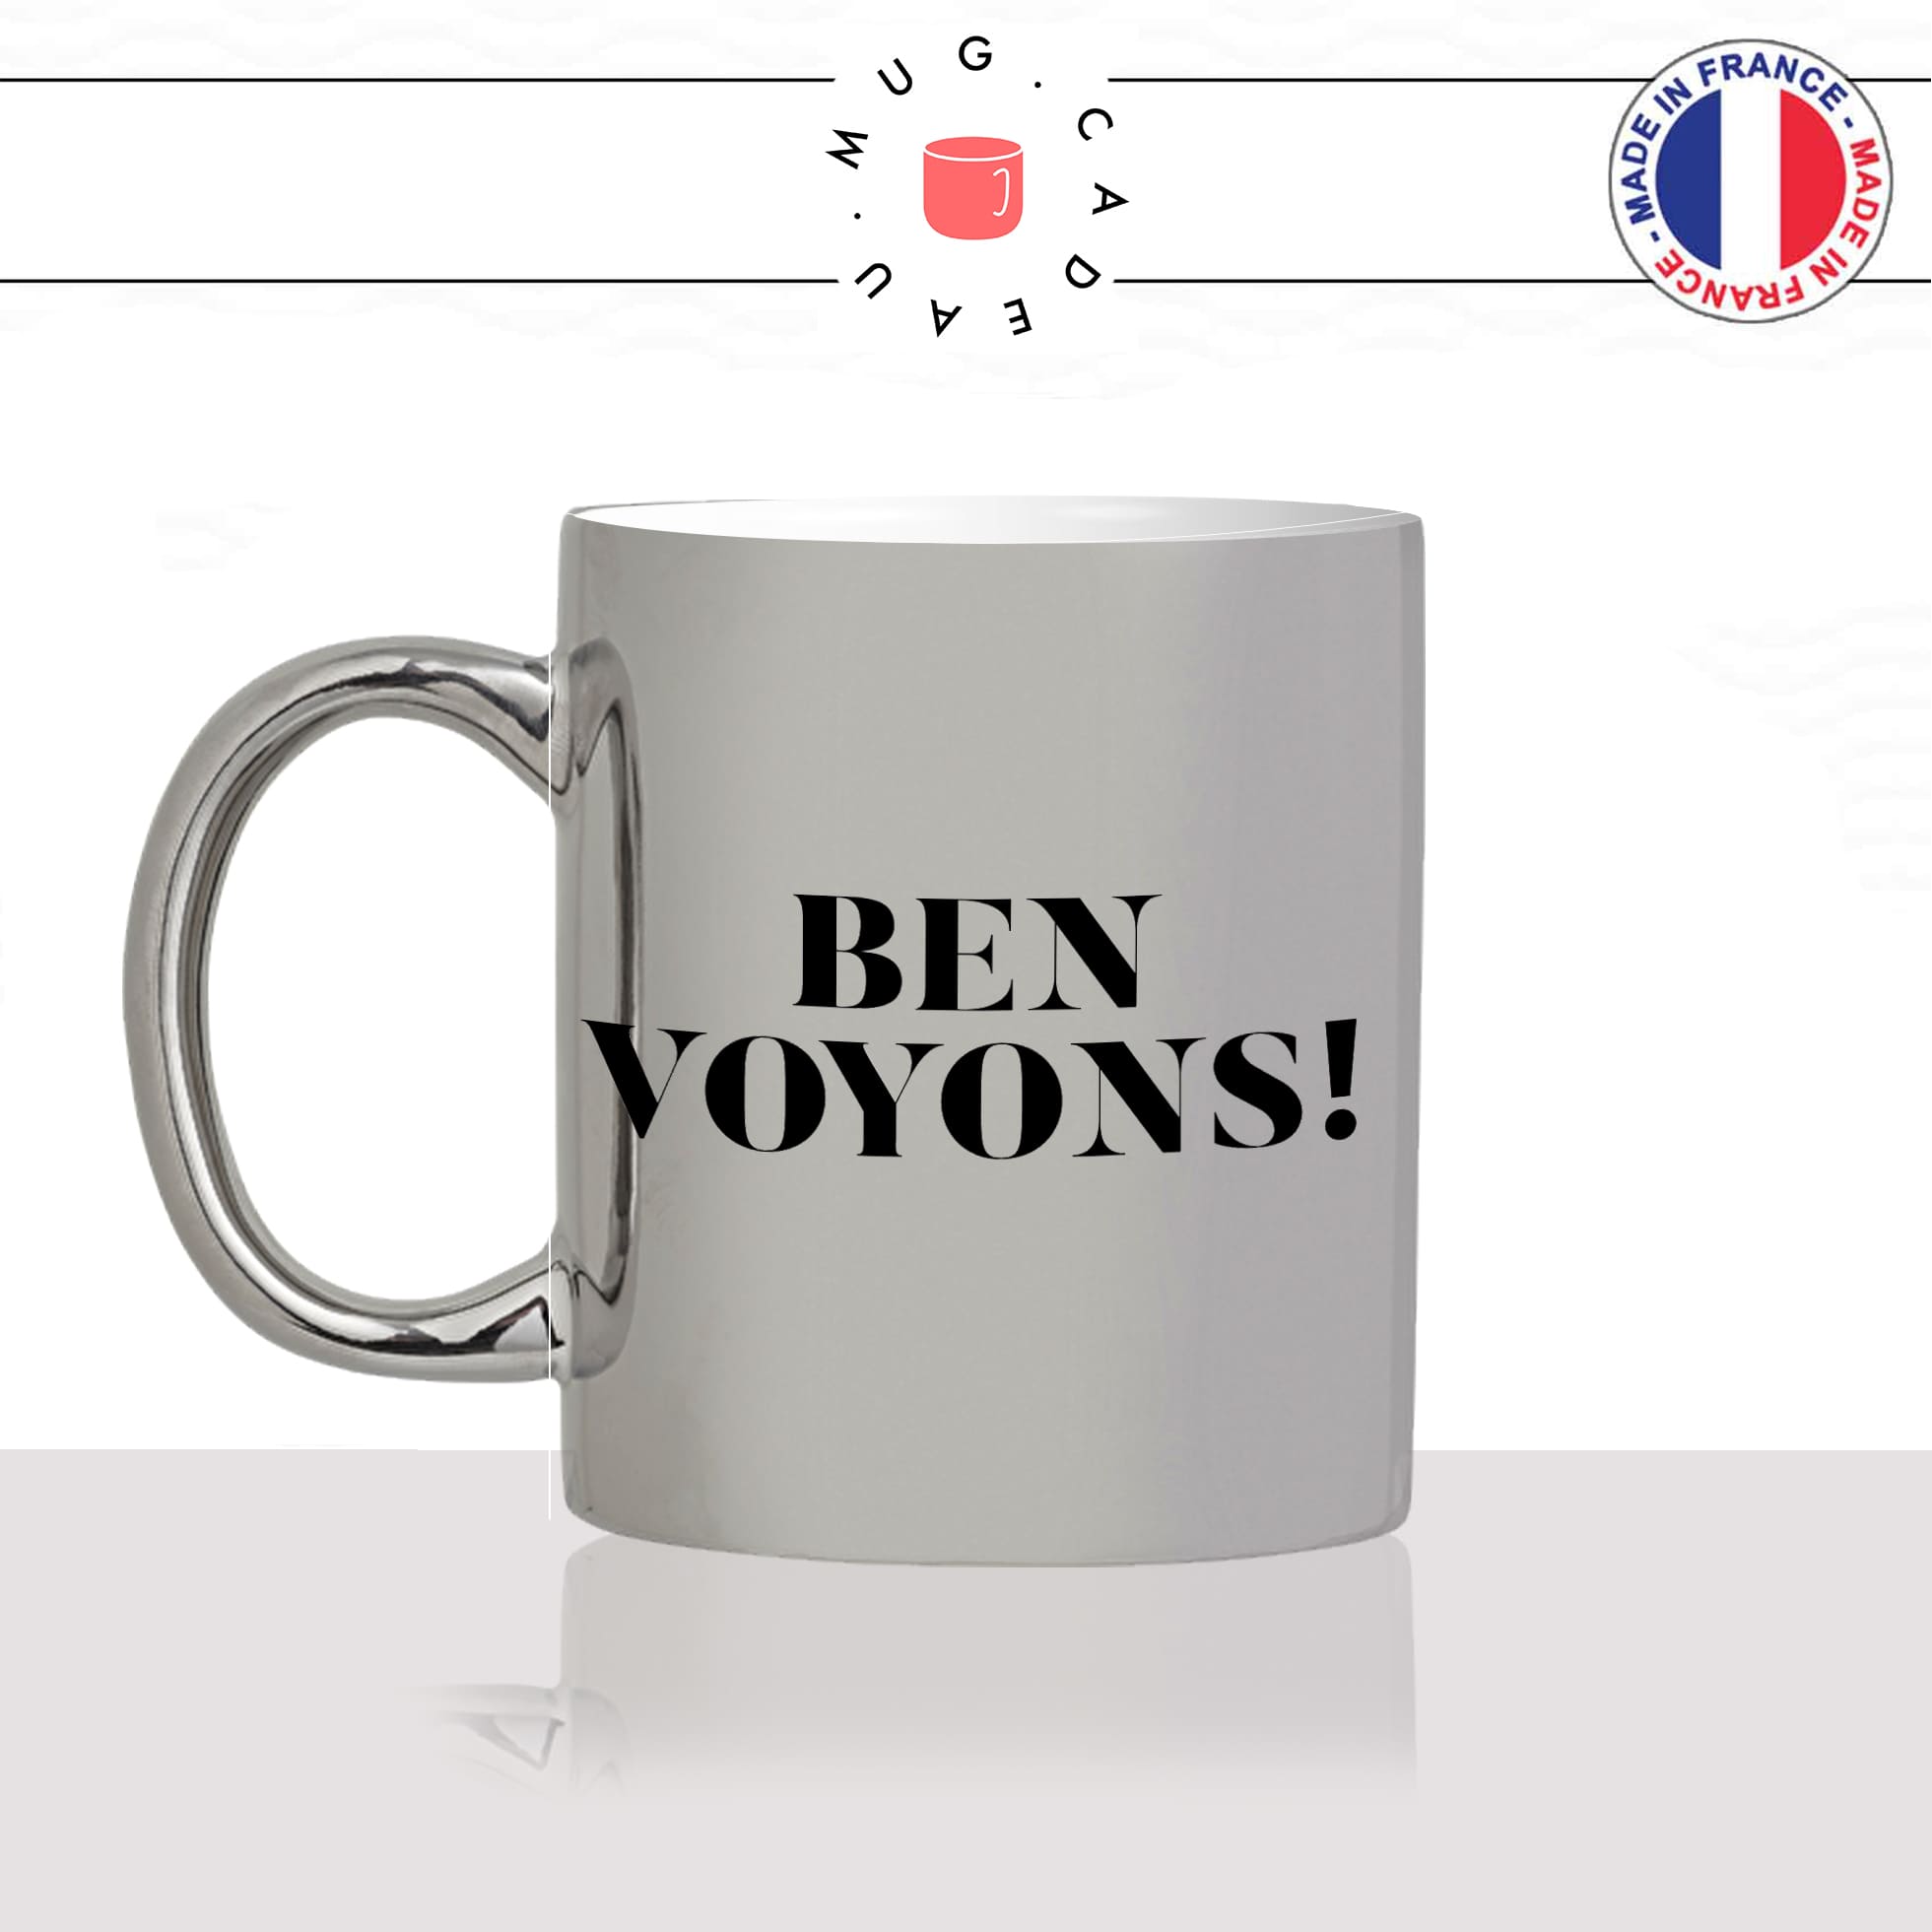 mug-tasse-argenté-argent-gris-silver-meme-ben-voyons-eric-zemmour-homme-femme-humour-fun-cool-idée-cadeau-original-personnalisé